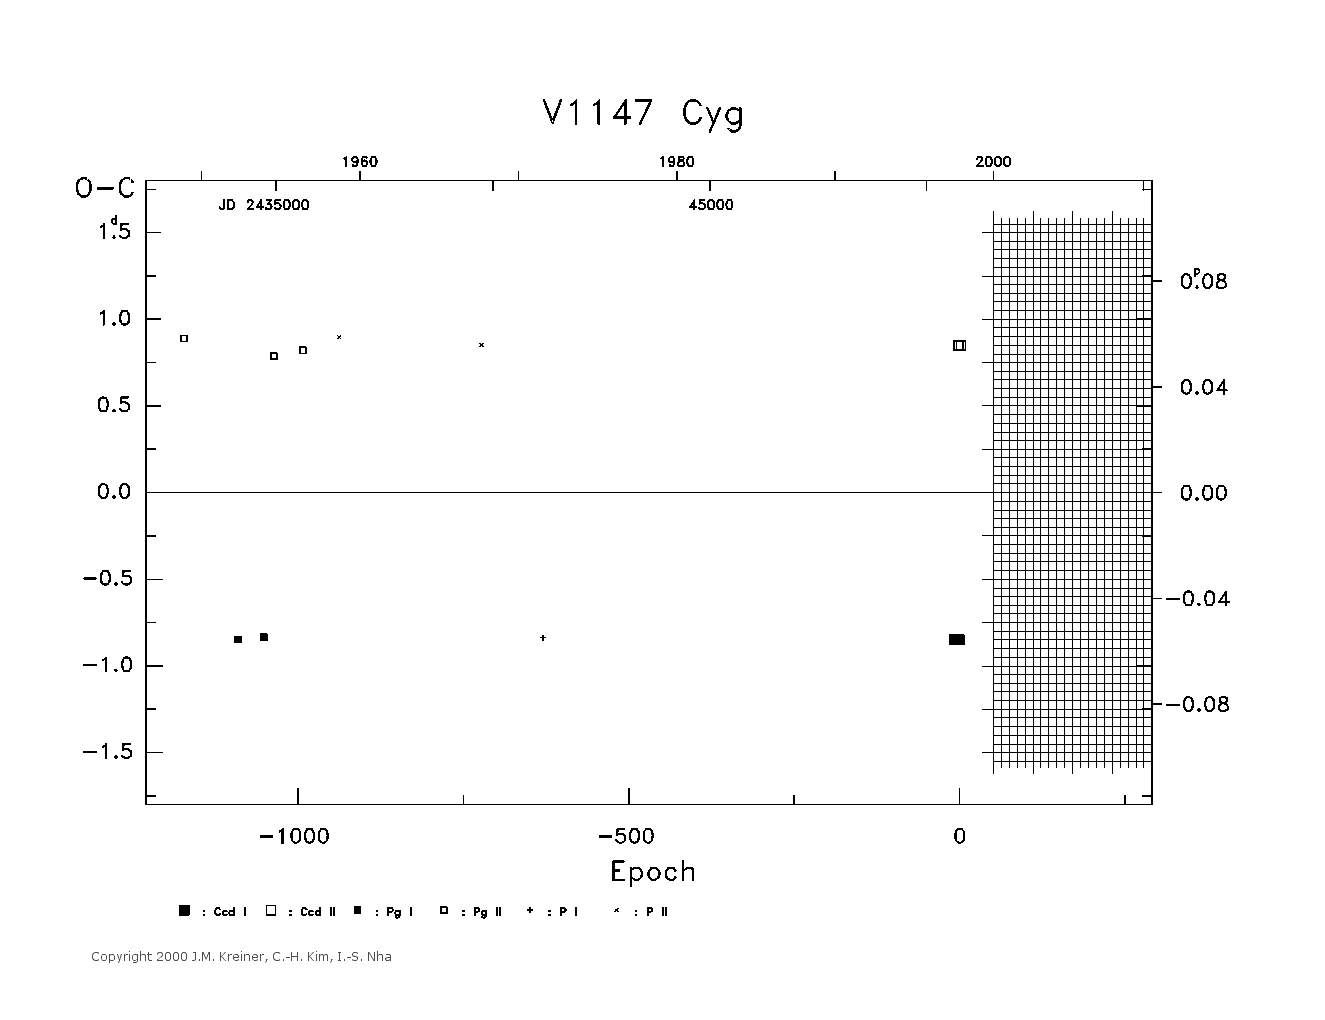 [IMAGE: large V1147 CYG O-C diagram]